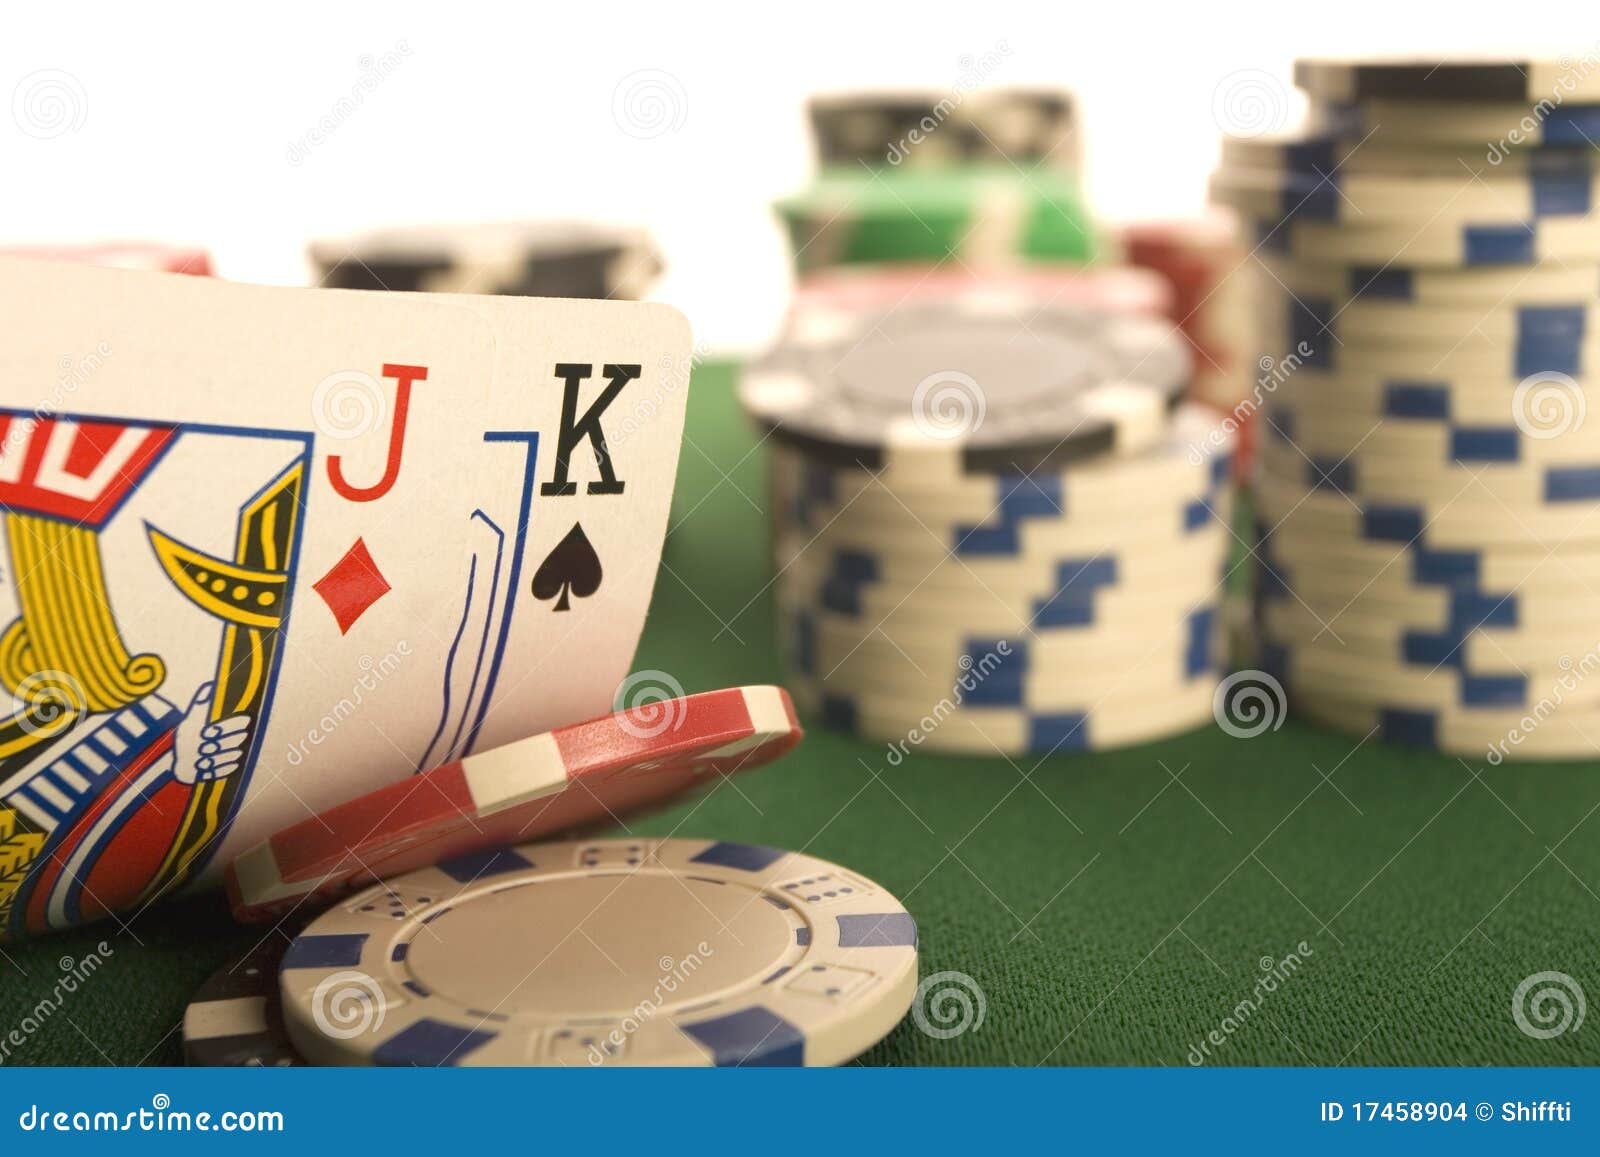 haenraets poker